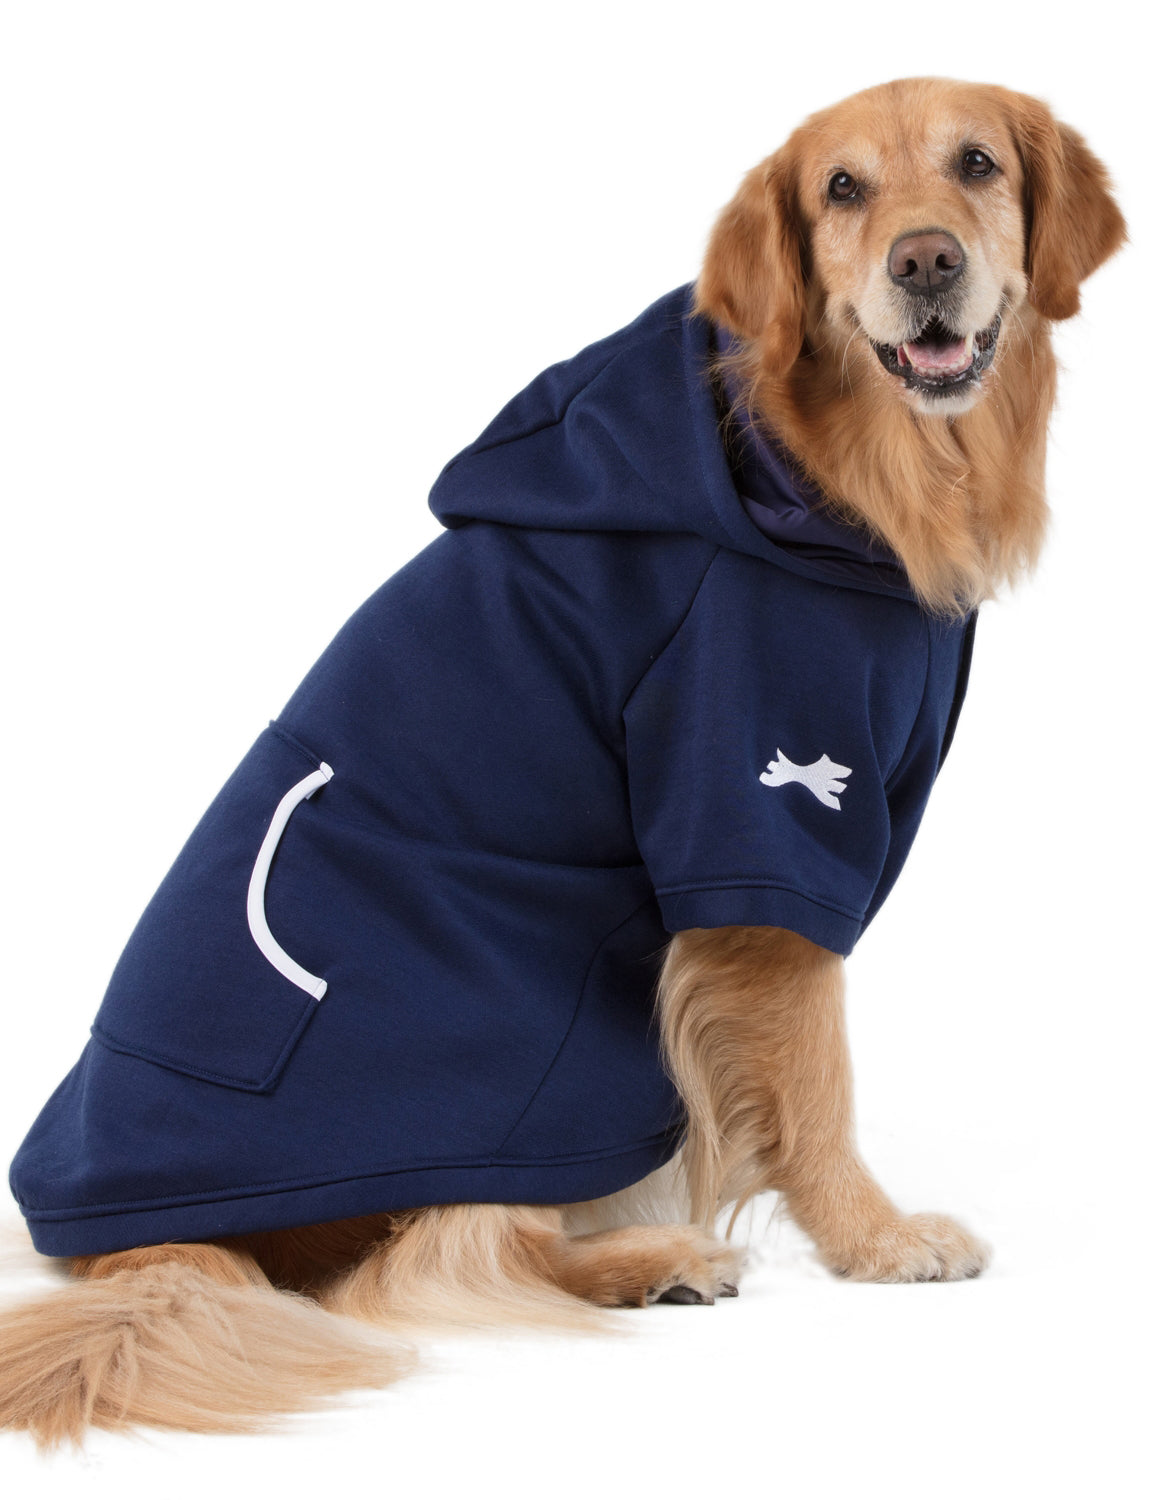 Navy Blue Pet Pajamas - Pet Pjs, Dog Pajamas